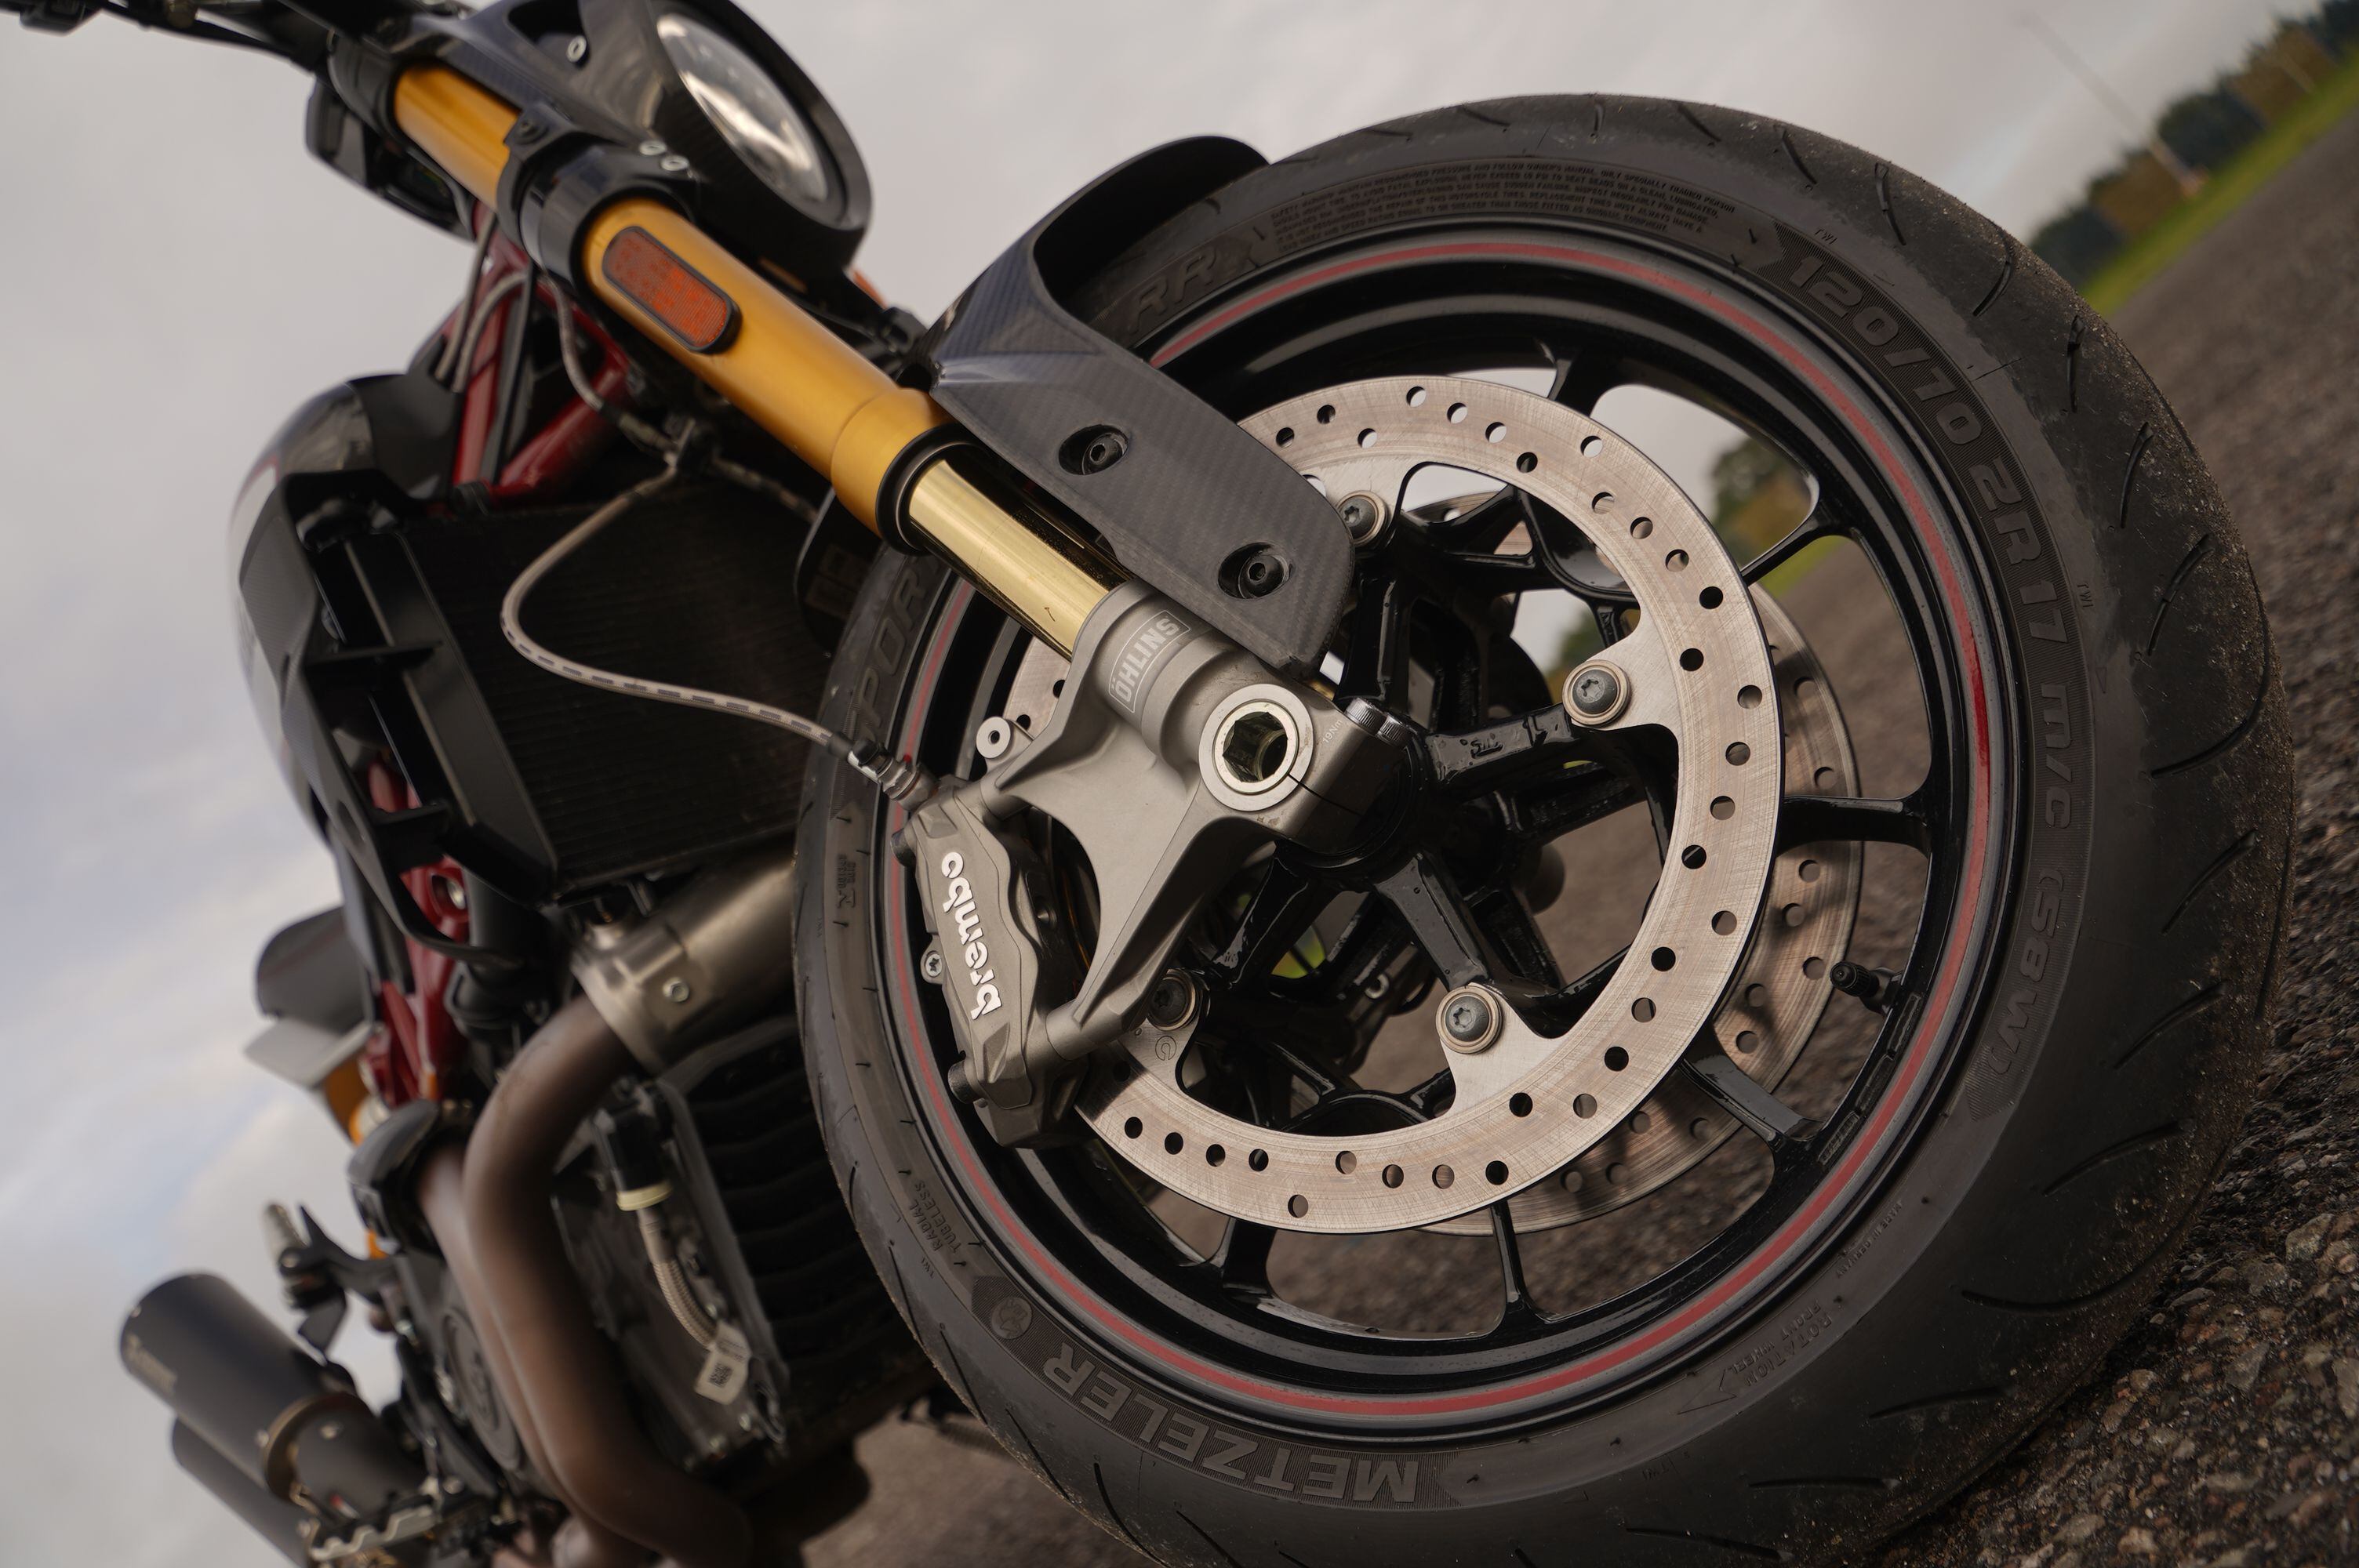 La FTR R 1200 Carbon es la propuesta más extrema de Indian Motorcycles en el segmento de las flat track